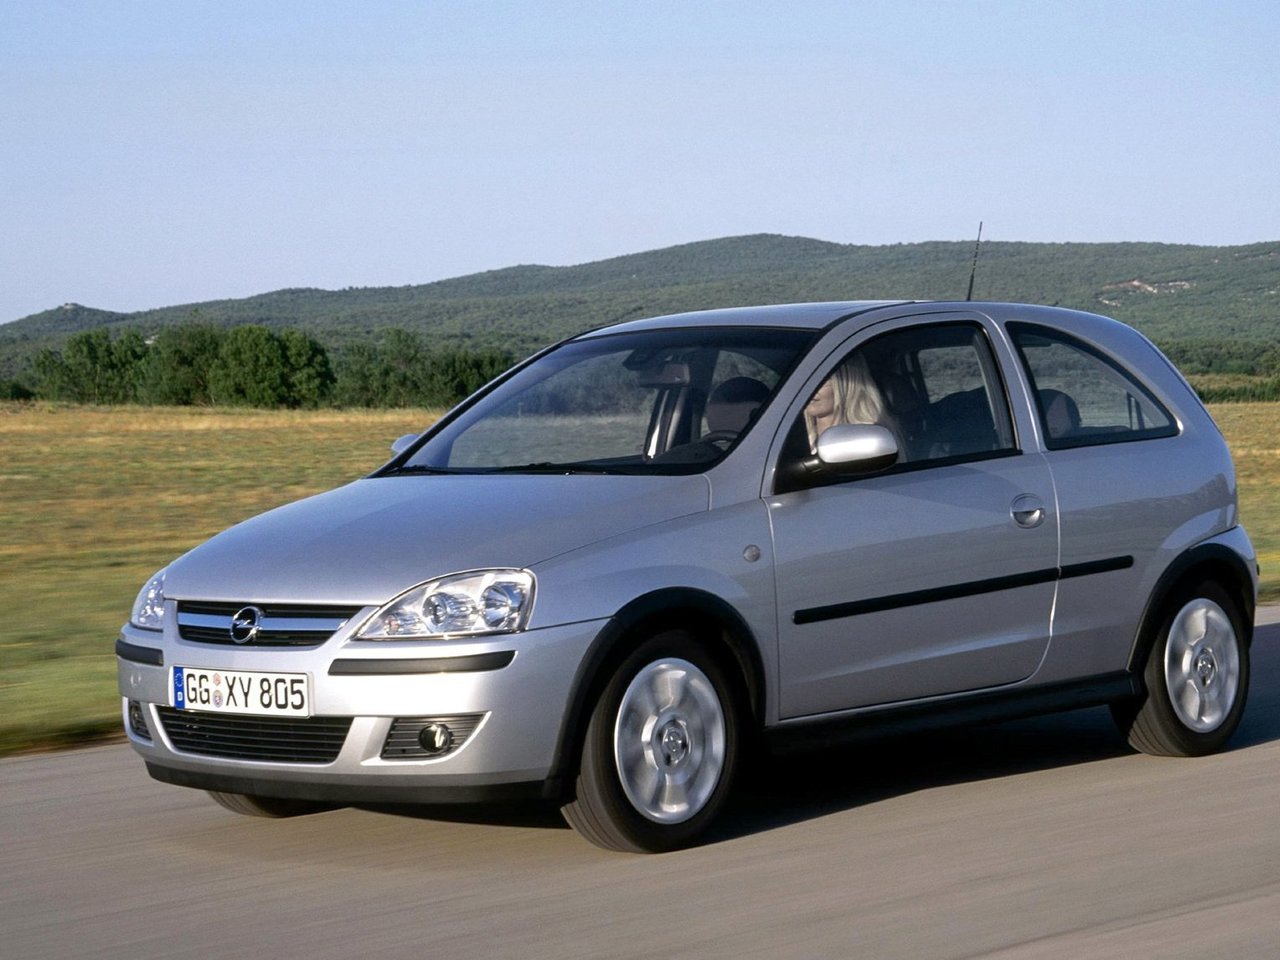 Расход газа семи комплектаций хэтчбека три двери Opel Corsa. Разница стоимости заправки газом и бензином. Автономный пробег до и после установки ГБО.